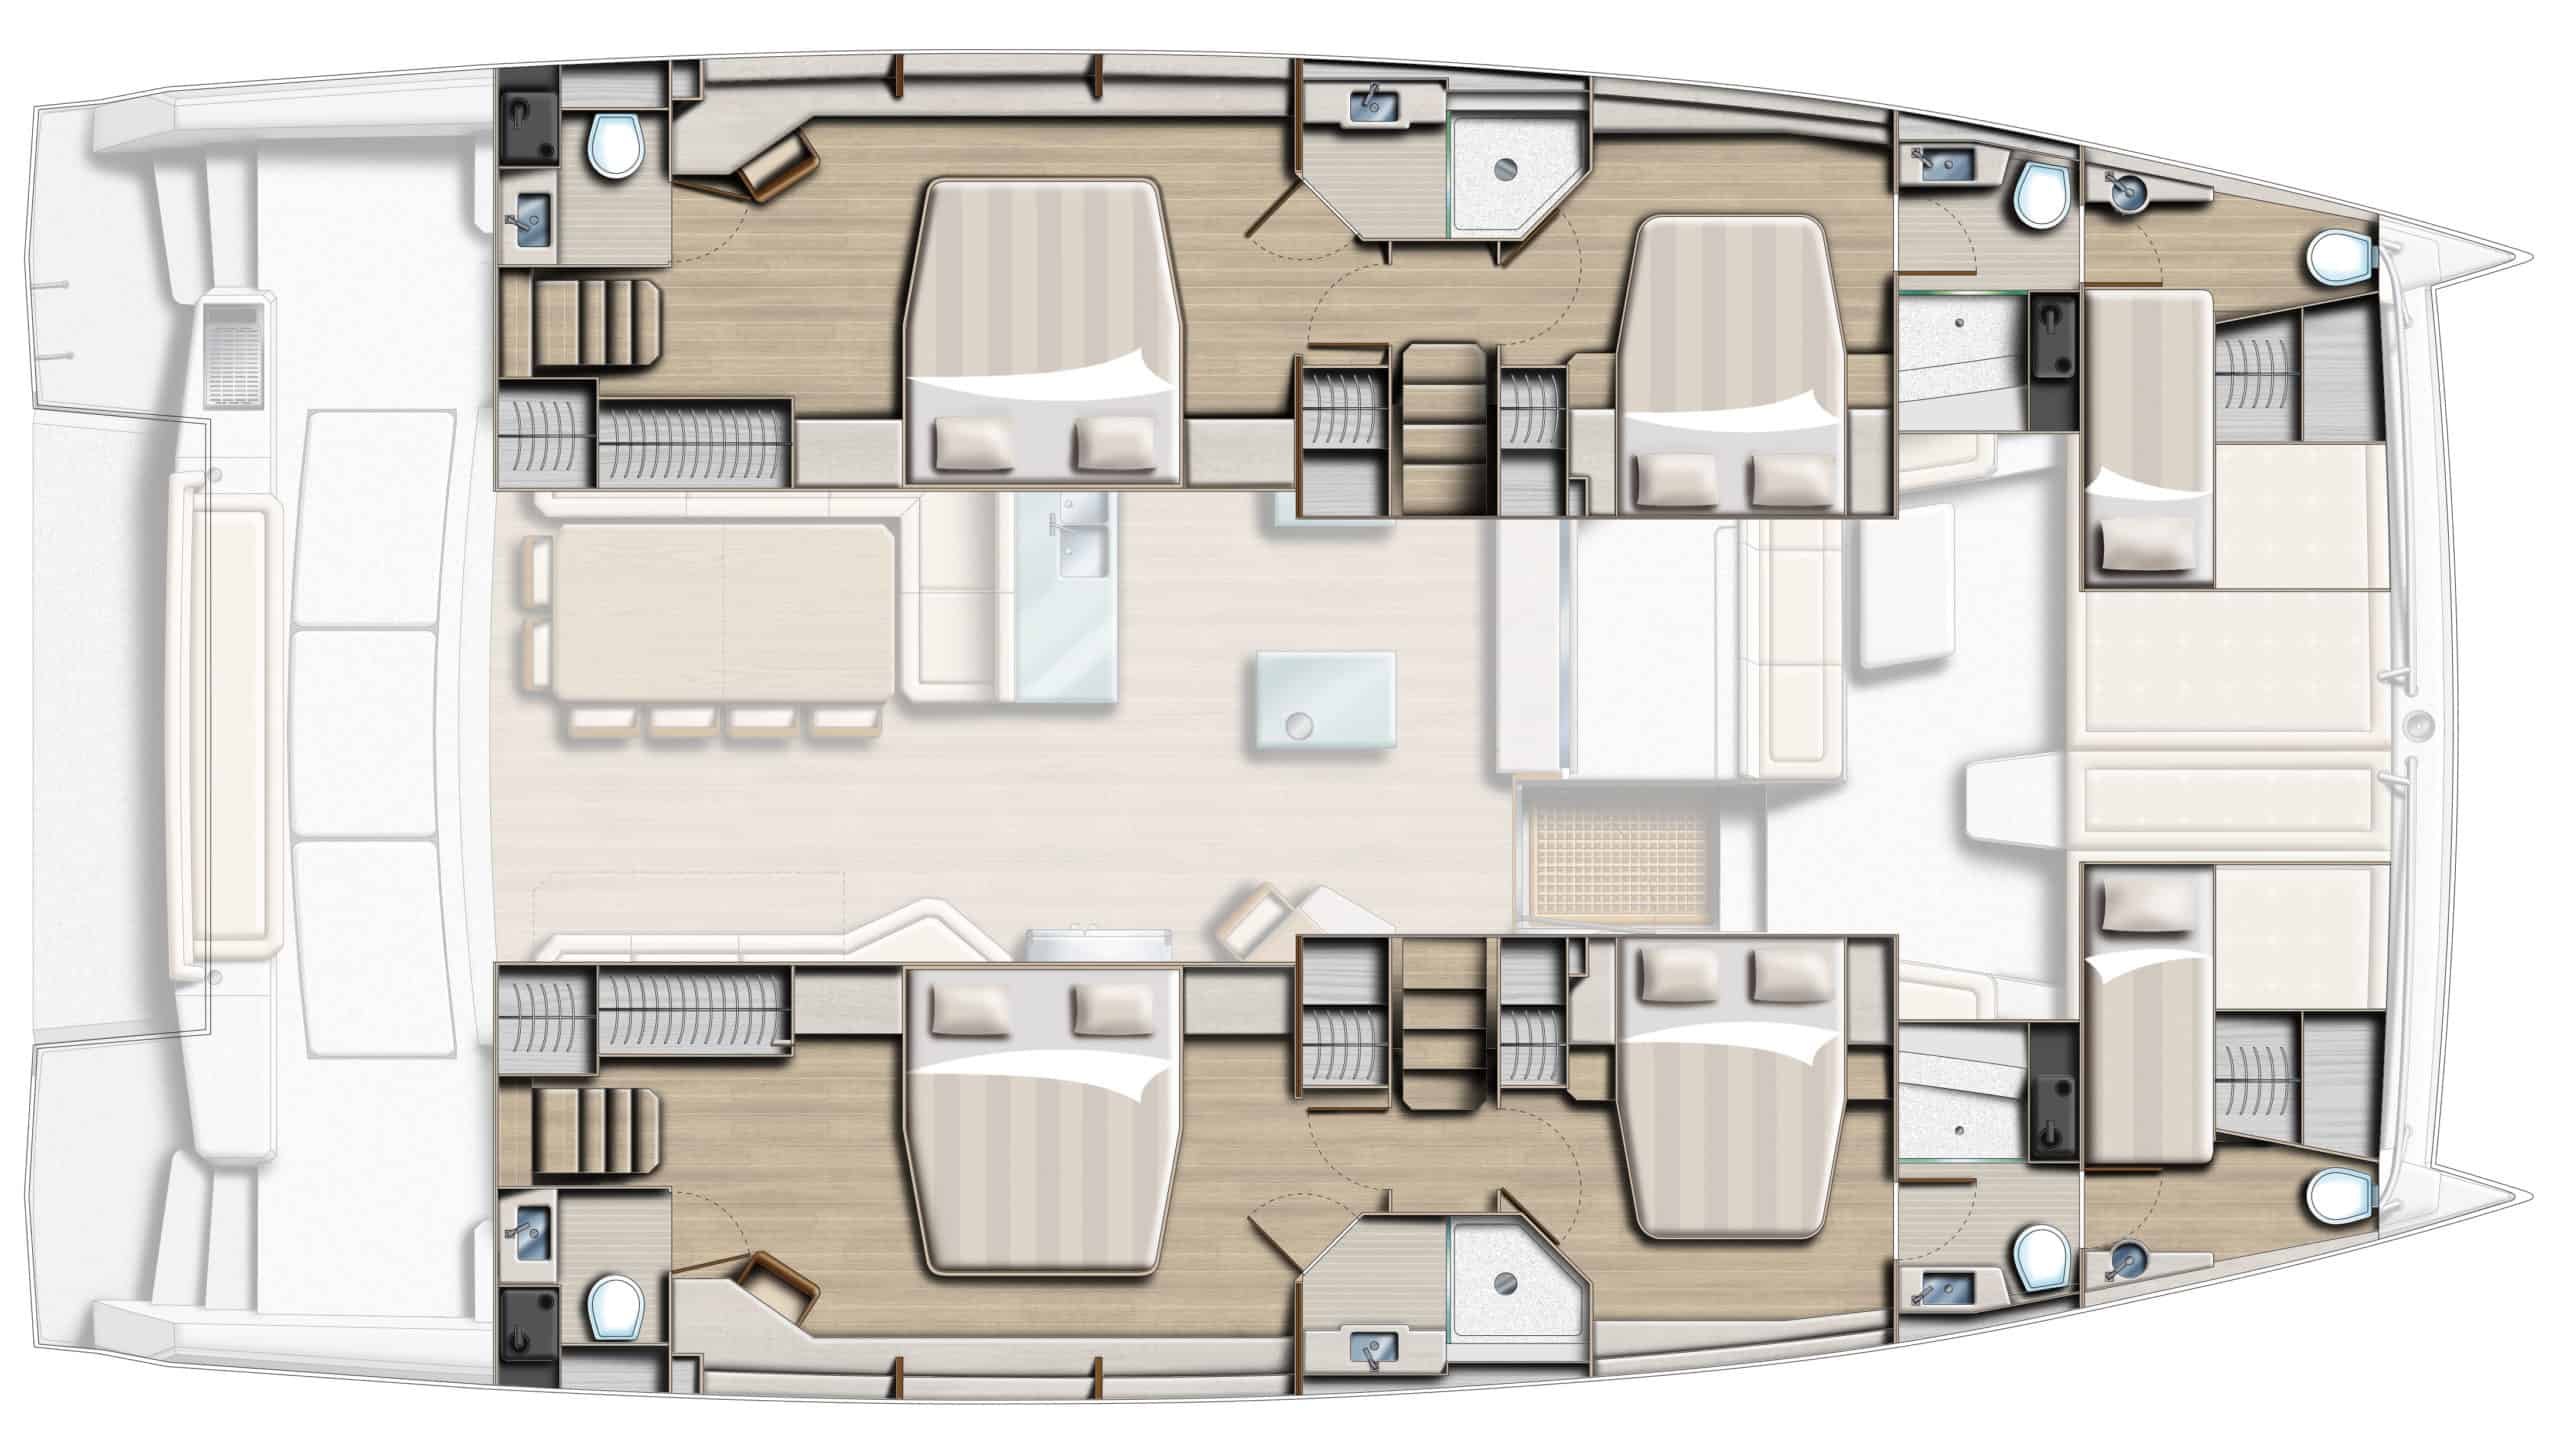 Bali 5.4 catamaran layout